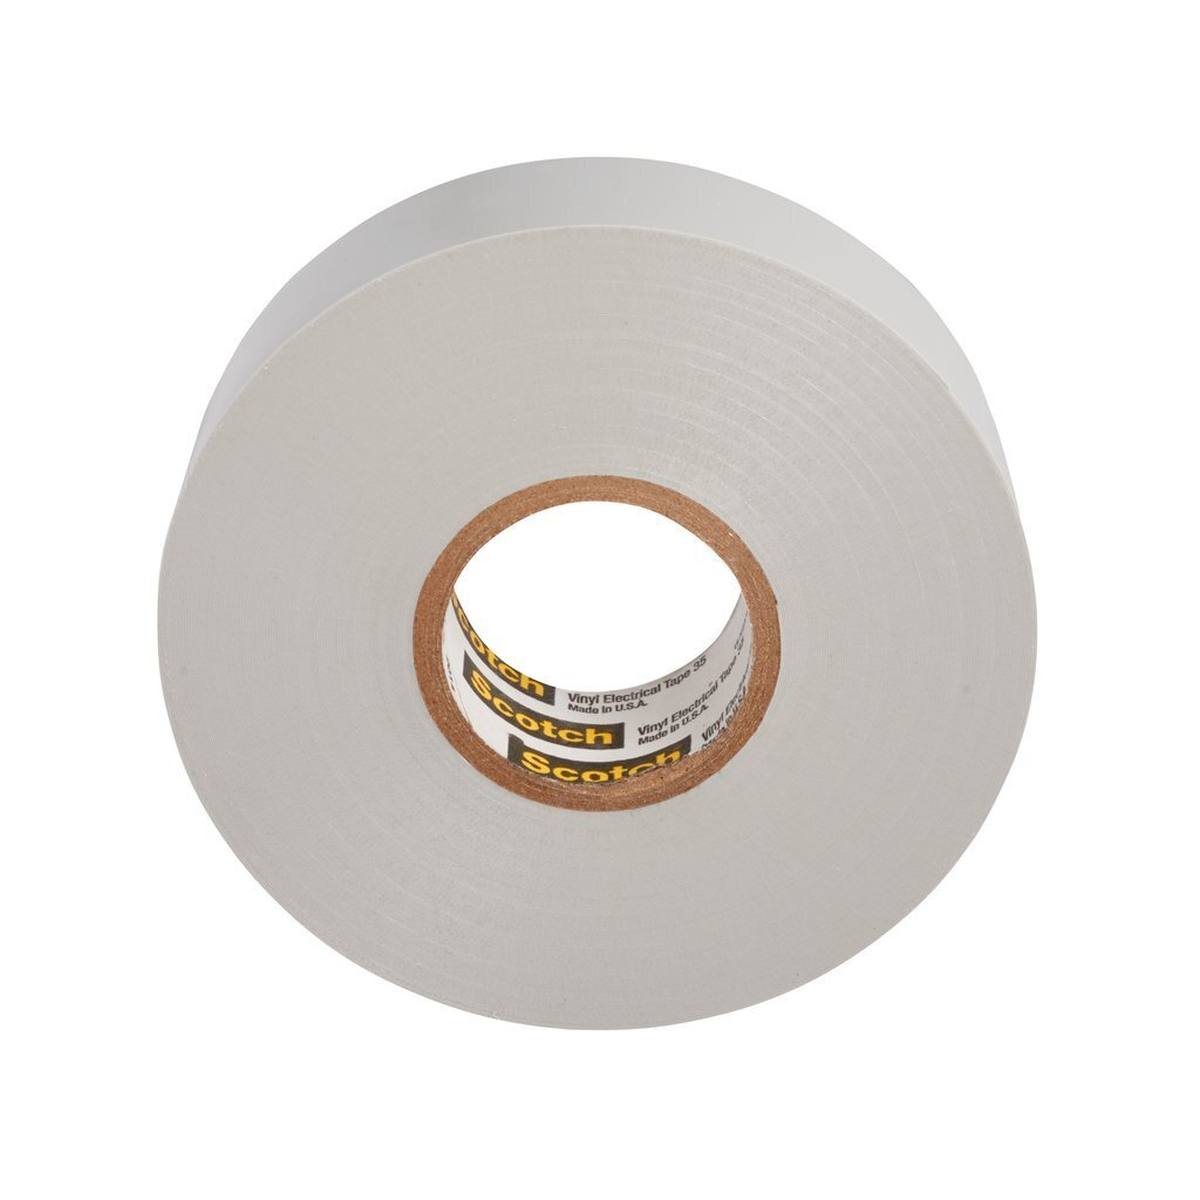 3M Scotch 35 Vinyl Elektro-Isolierband, Grau, 19 mm x 20 m, 0,18 mm